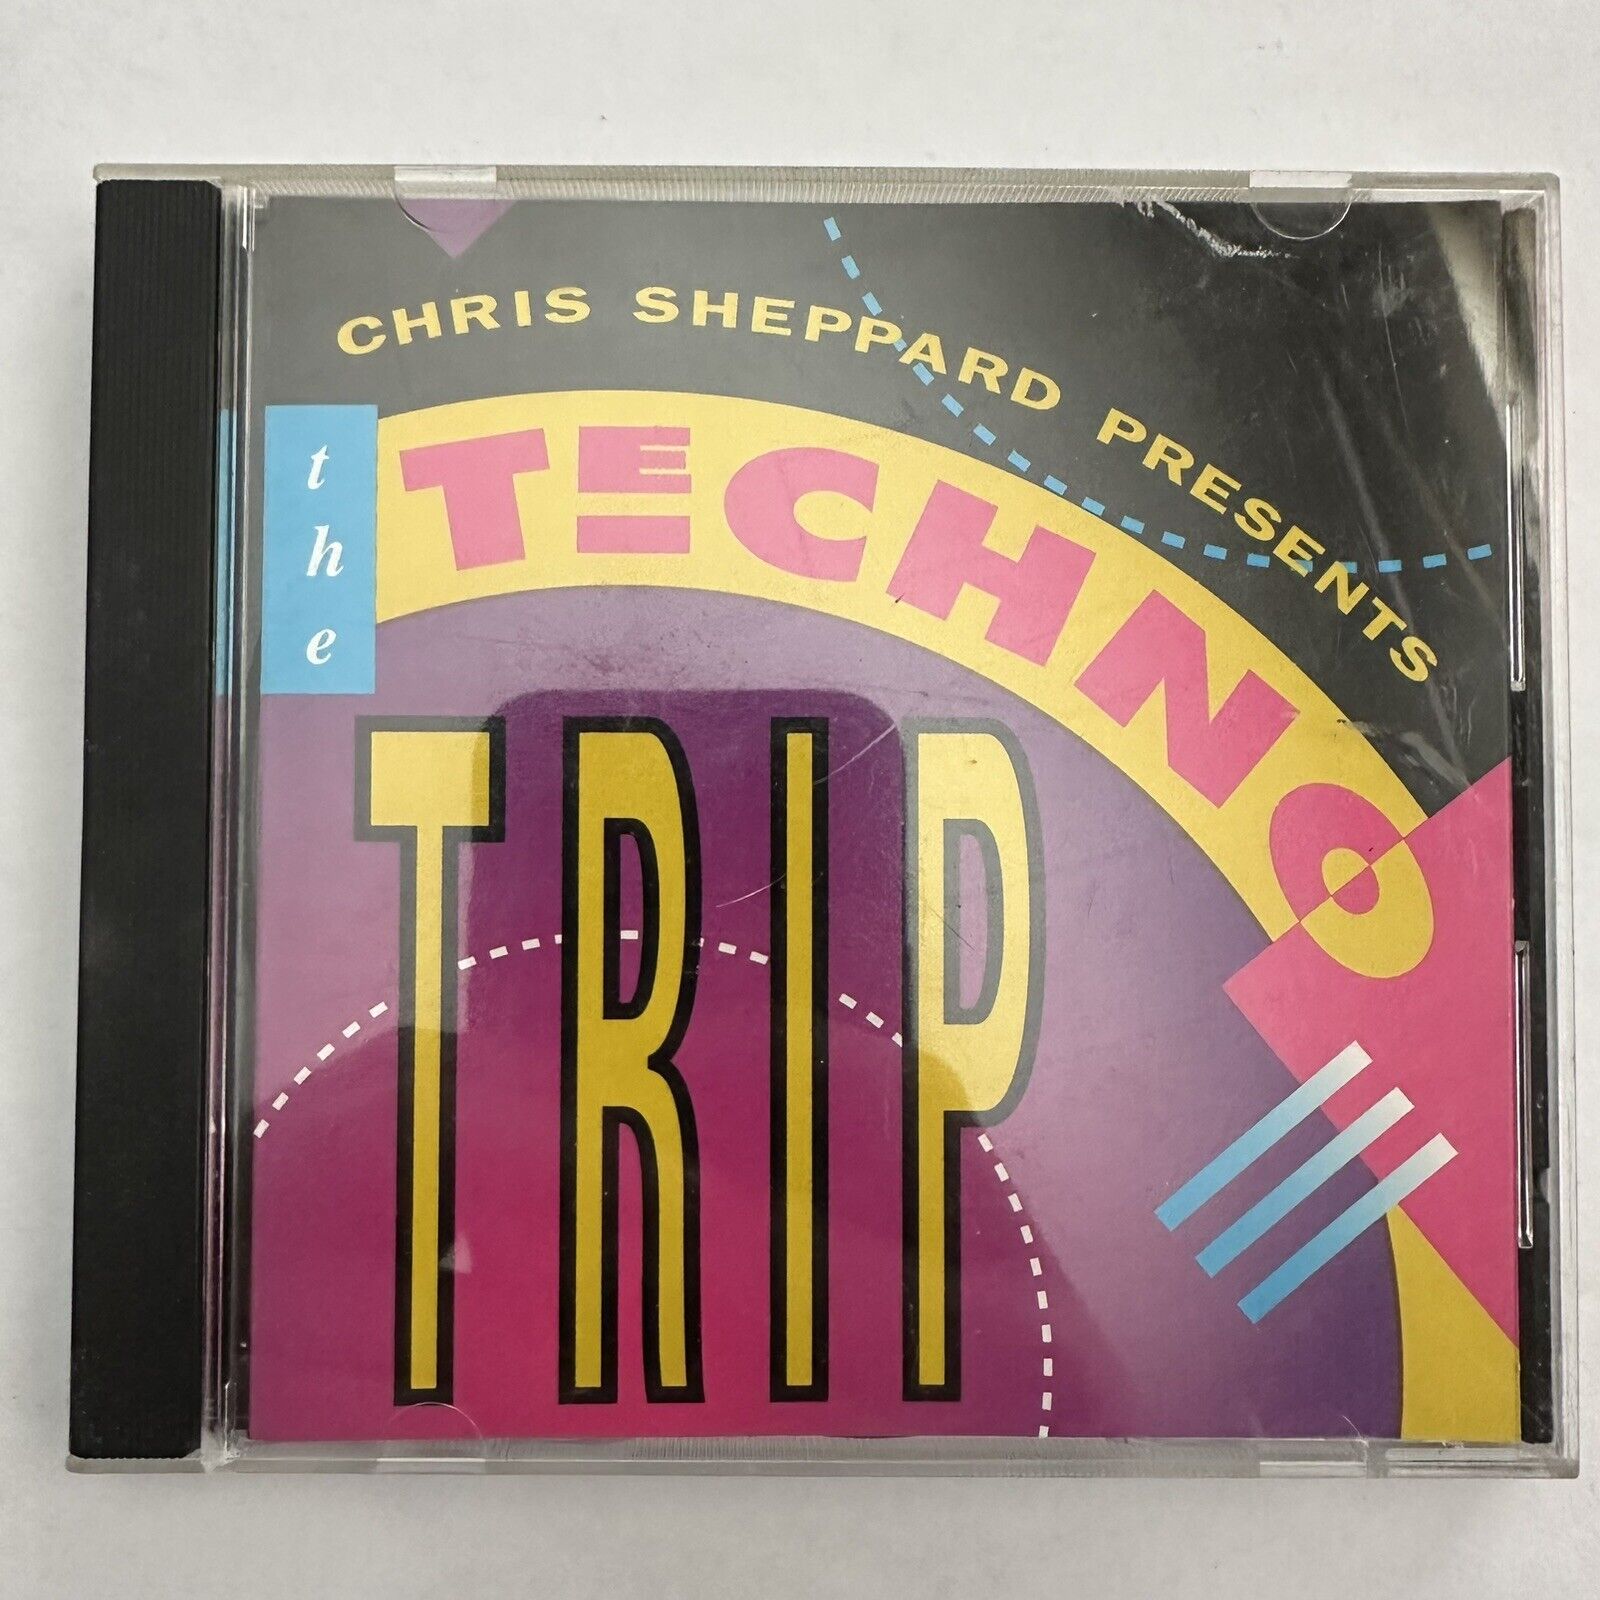 Chris Sheppard Presents - The Techno Trip (CD, QCD 2003)